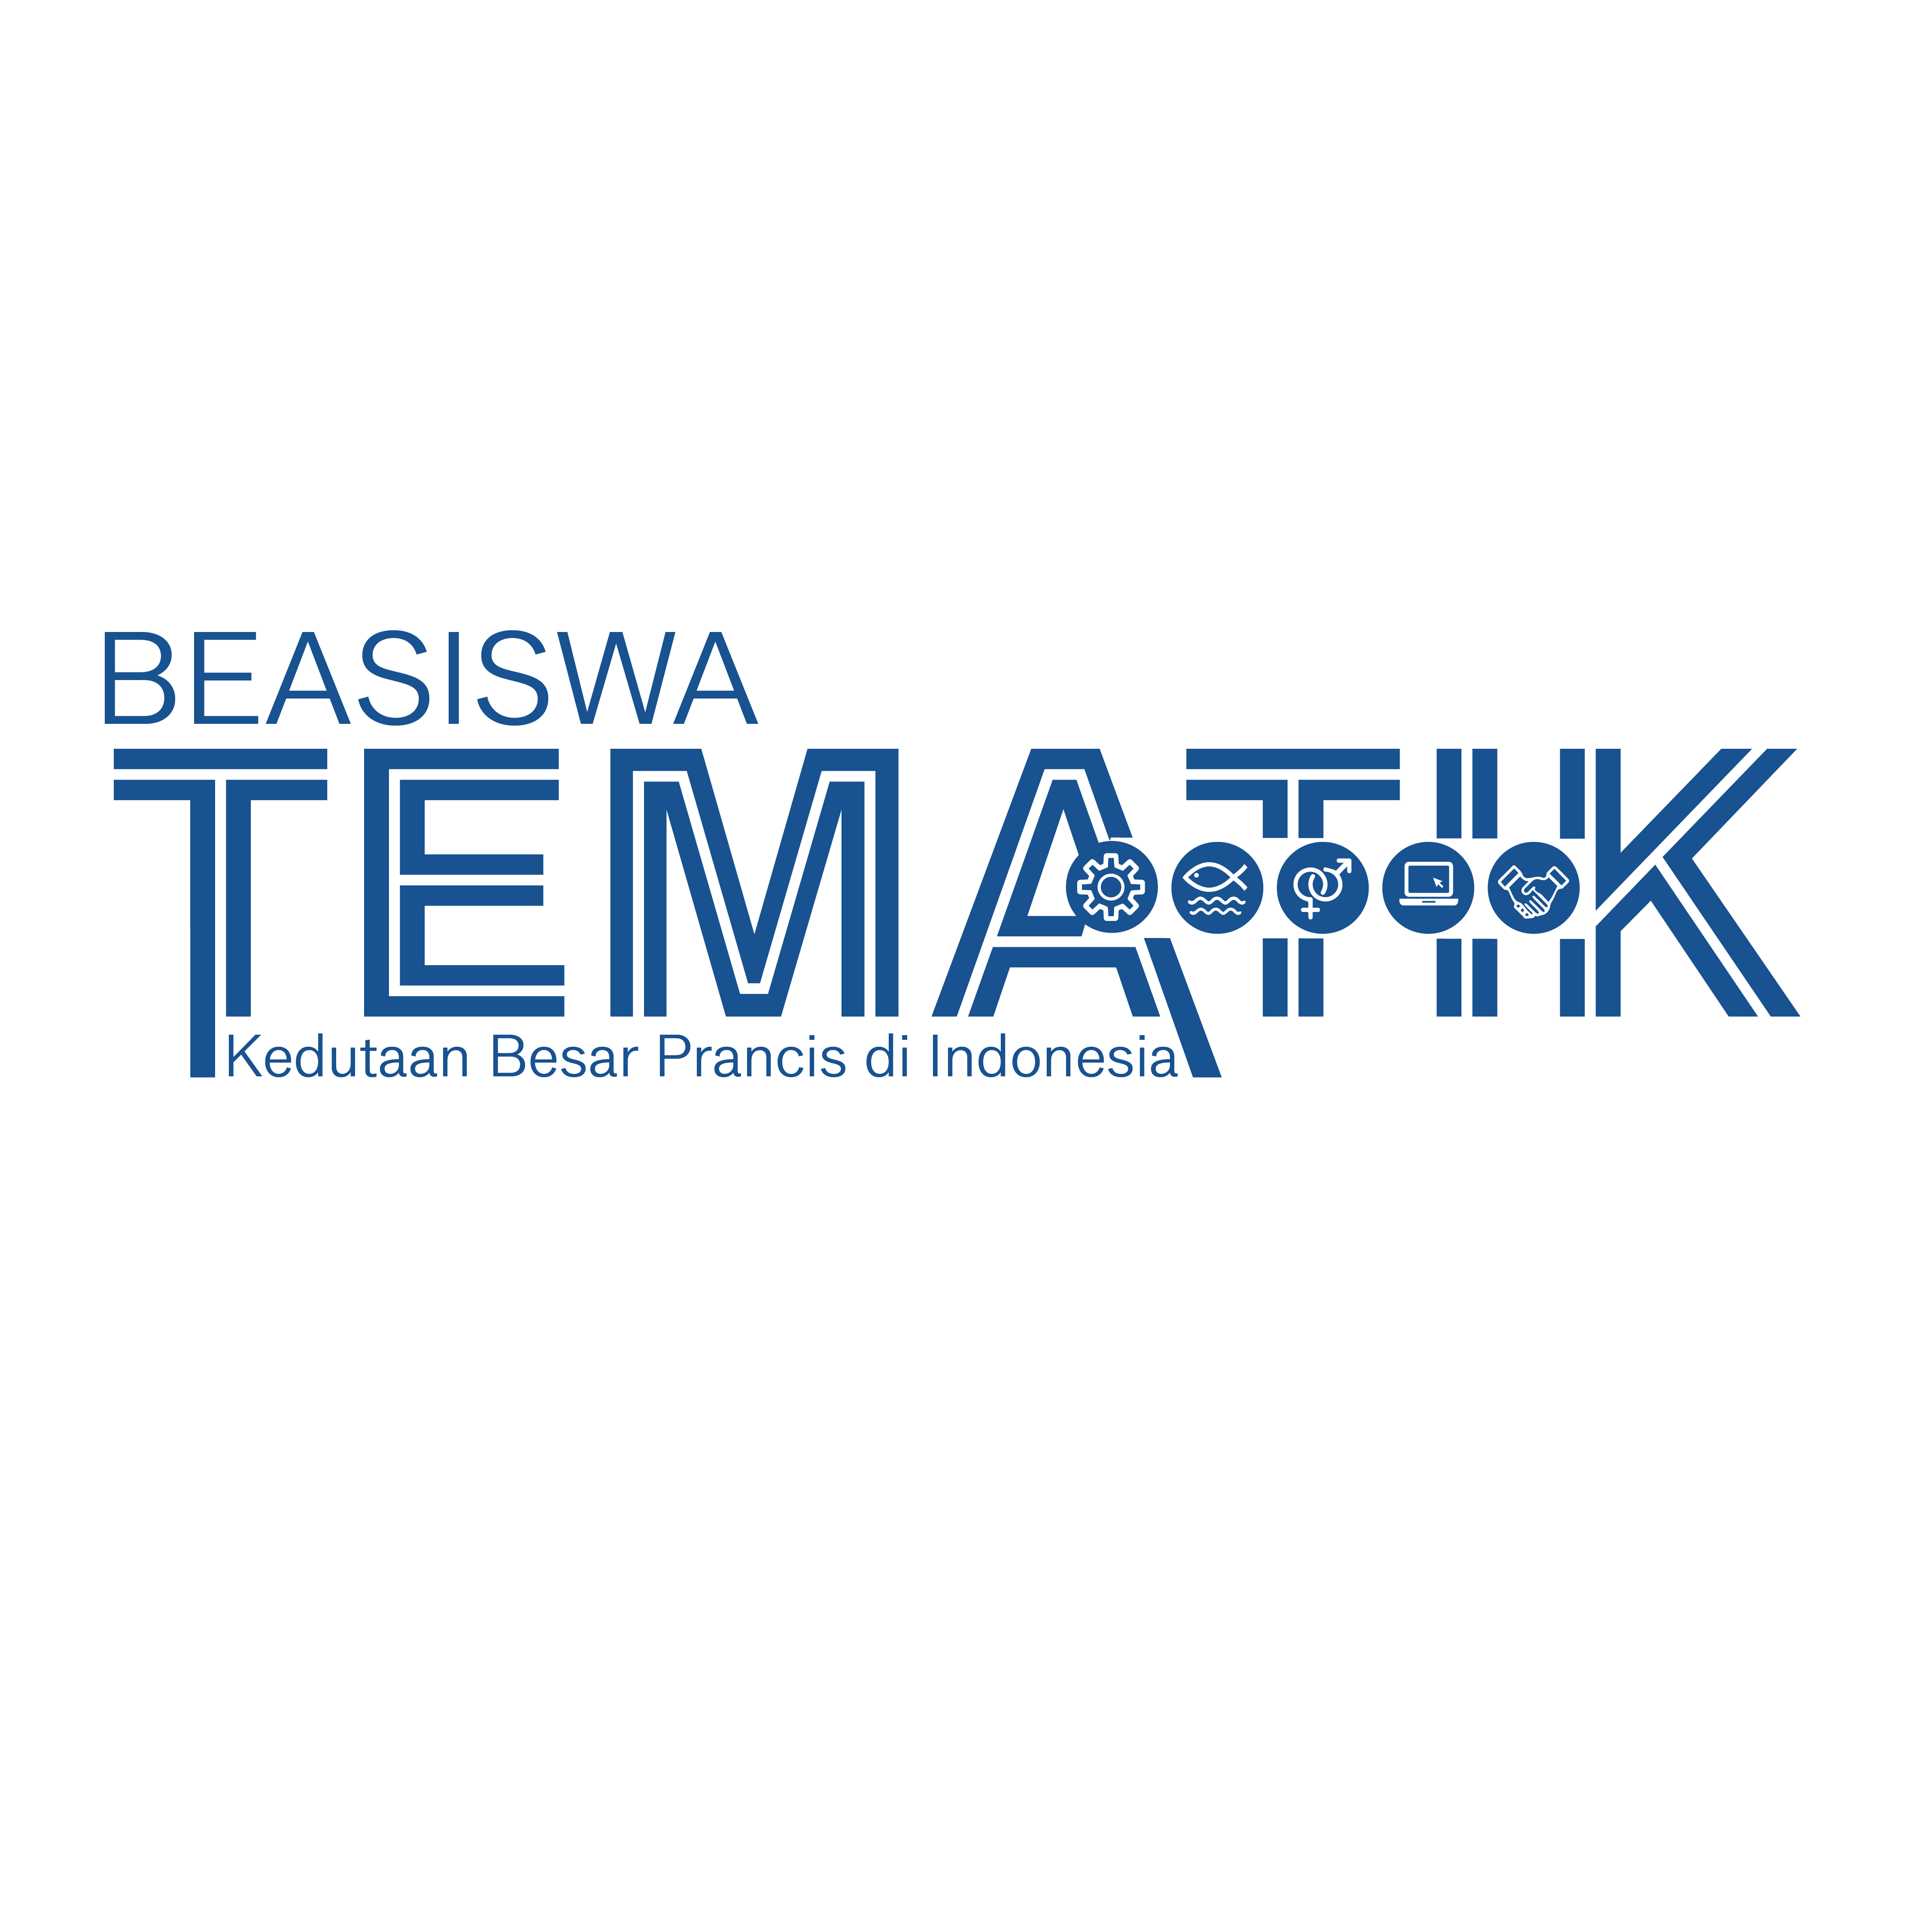 PROGRAM BEASISWA TEMATIK IFI – KEDUTAAN BESAR PRANCIS DI INDONESIA